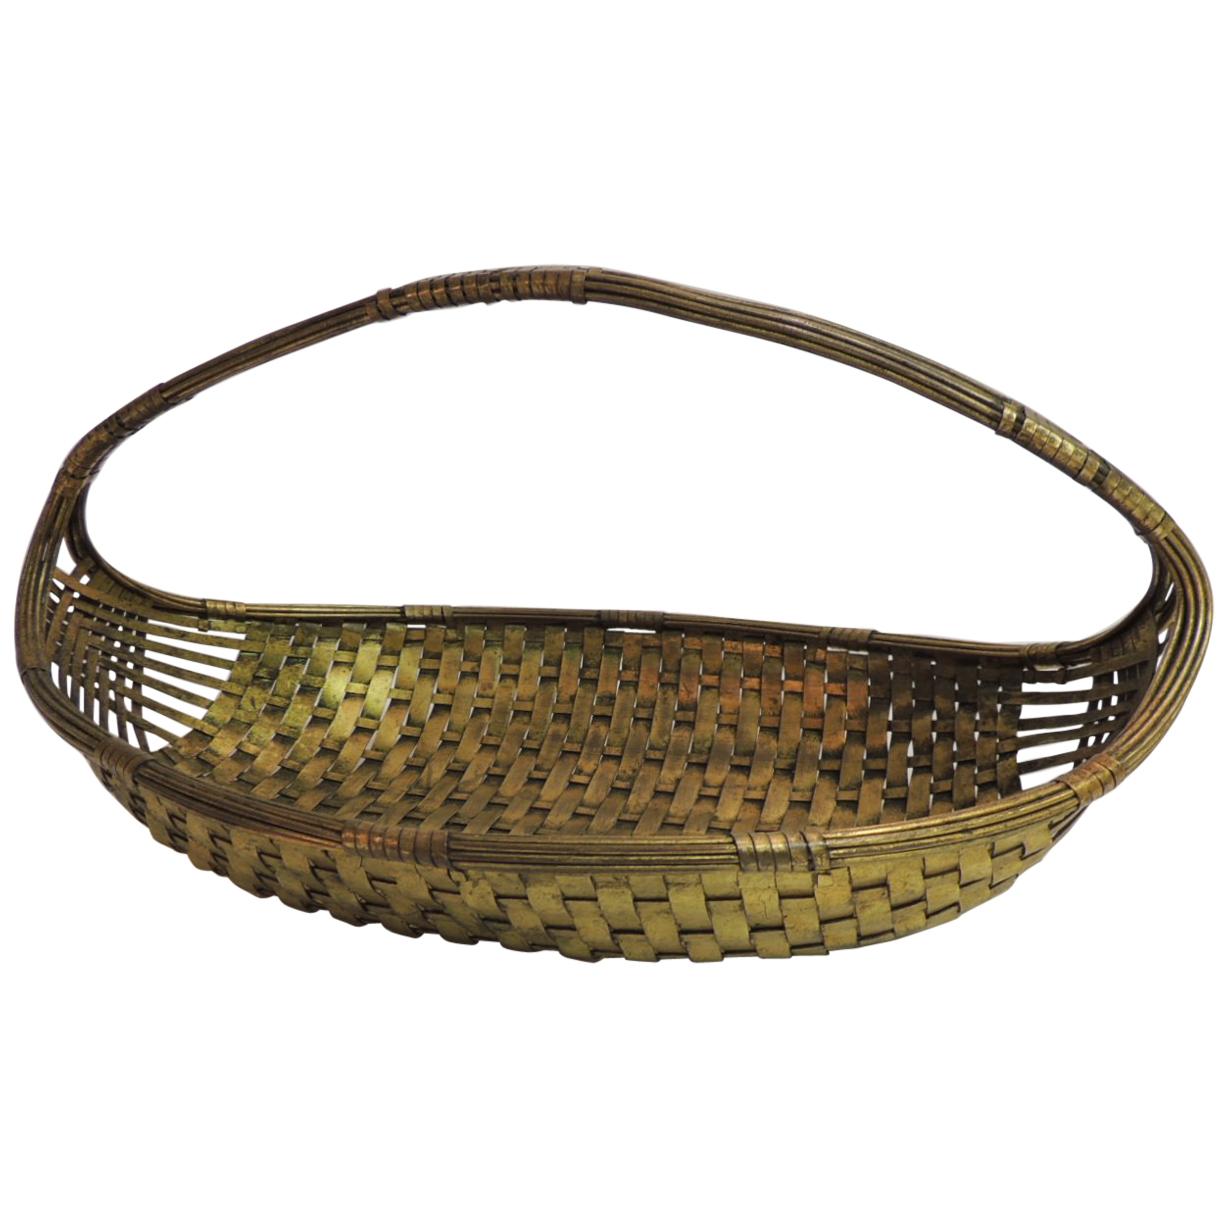 Flat Basket - 178 For Sale on 1stDibs  large flat basket with handle,  round flat basket, small flat basket